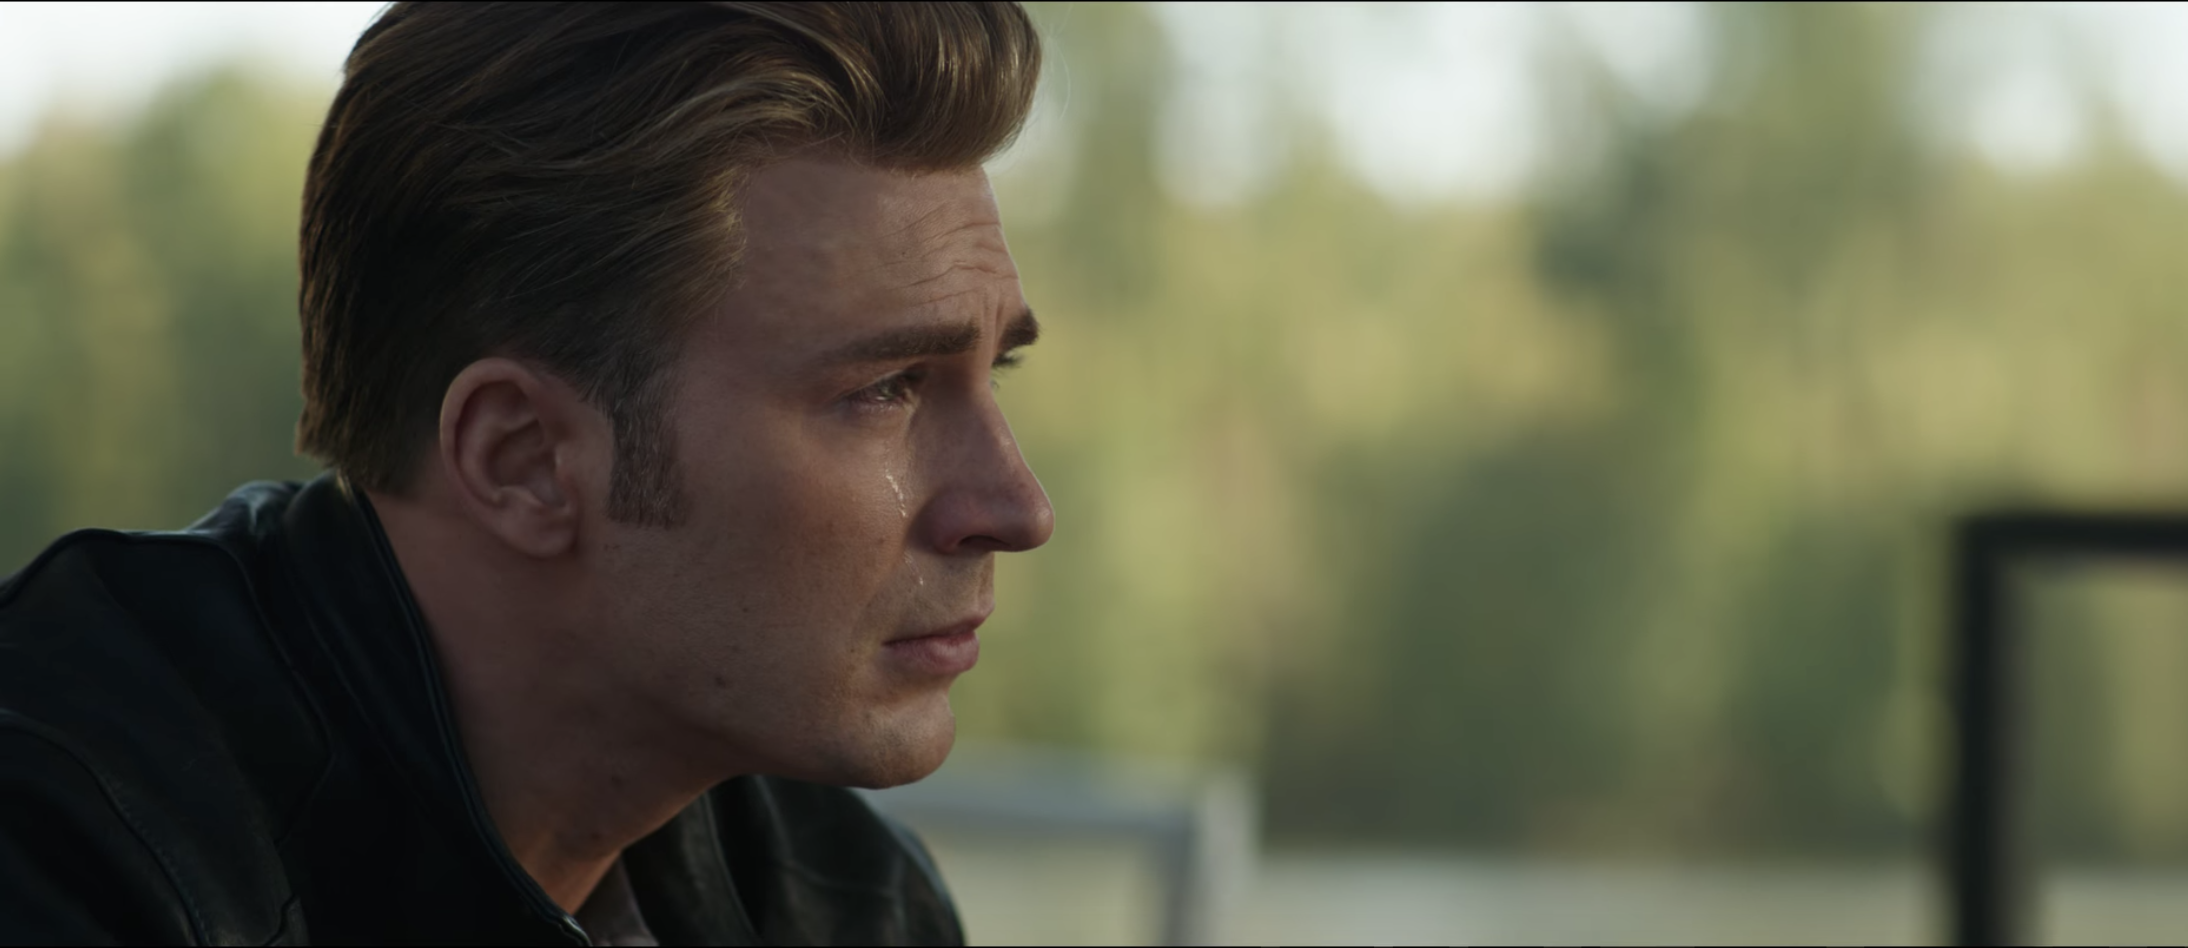 Chris Evans as Captain America in Avengers: Endgame trailer